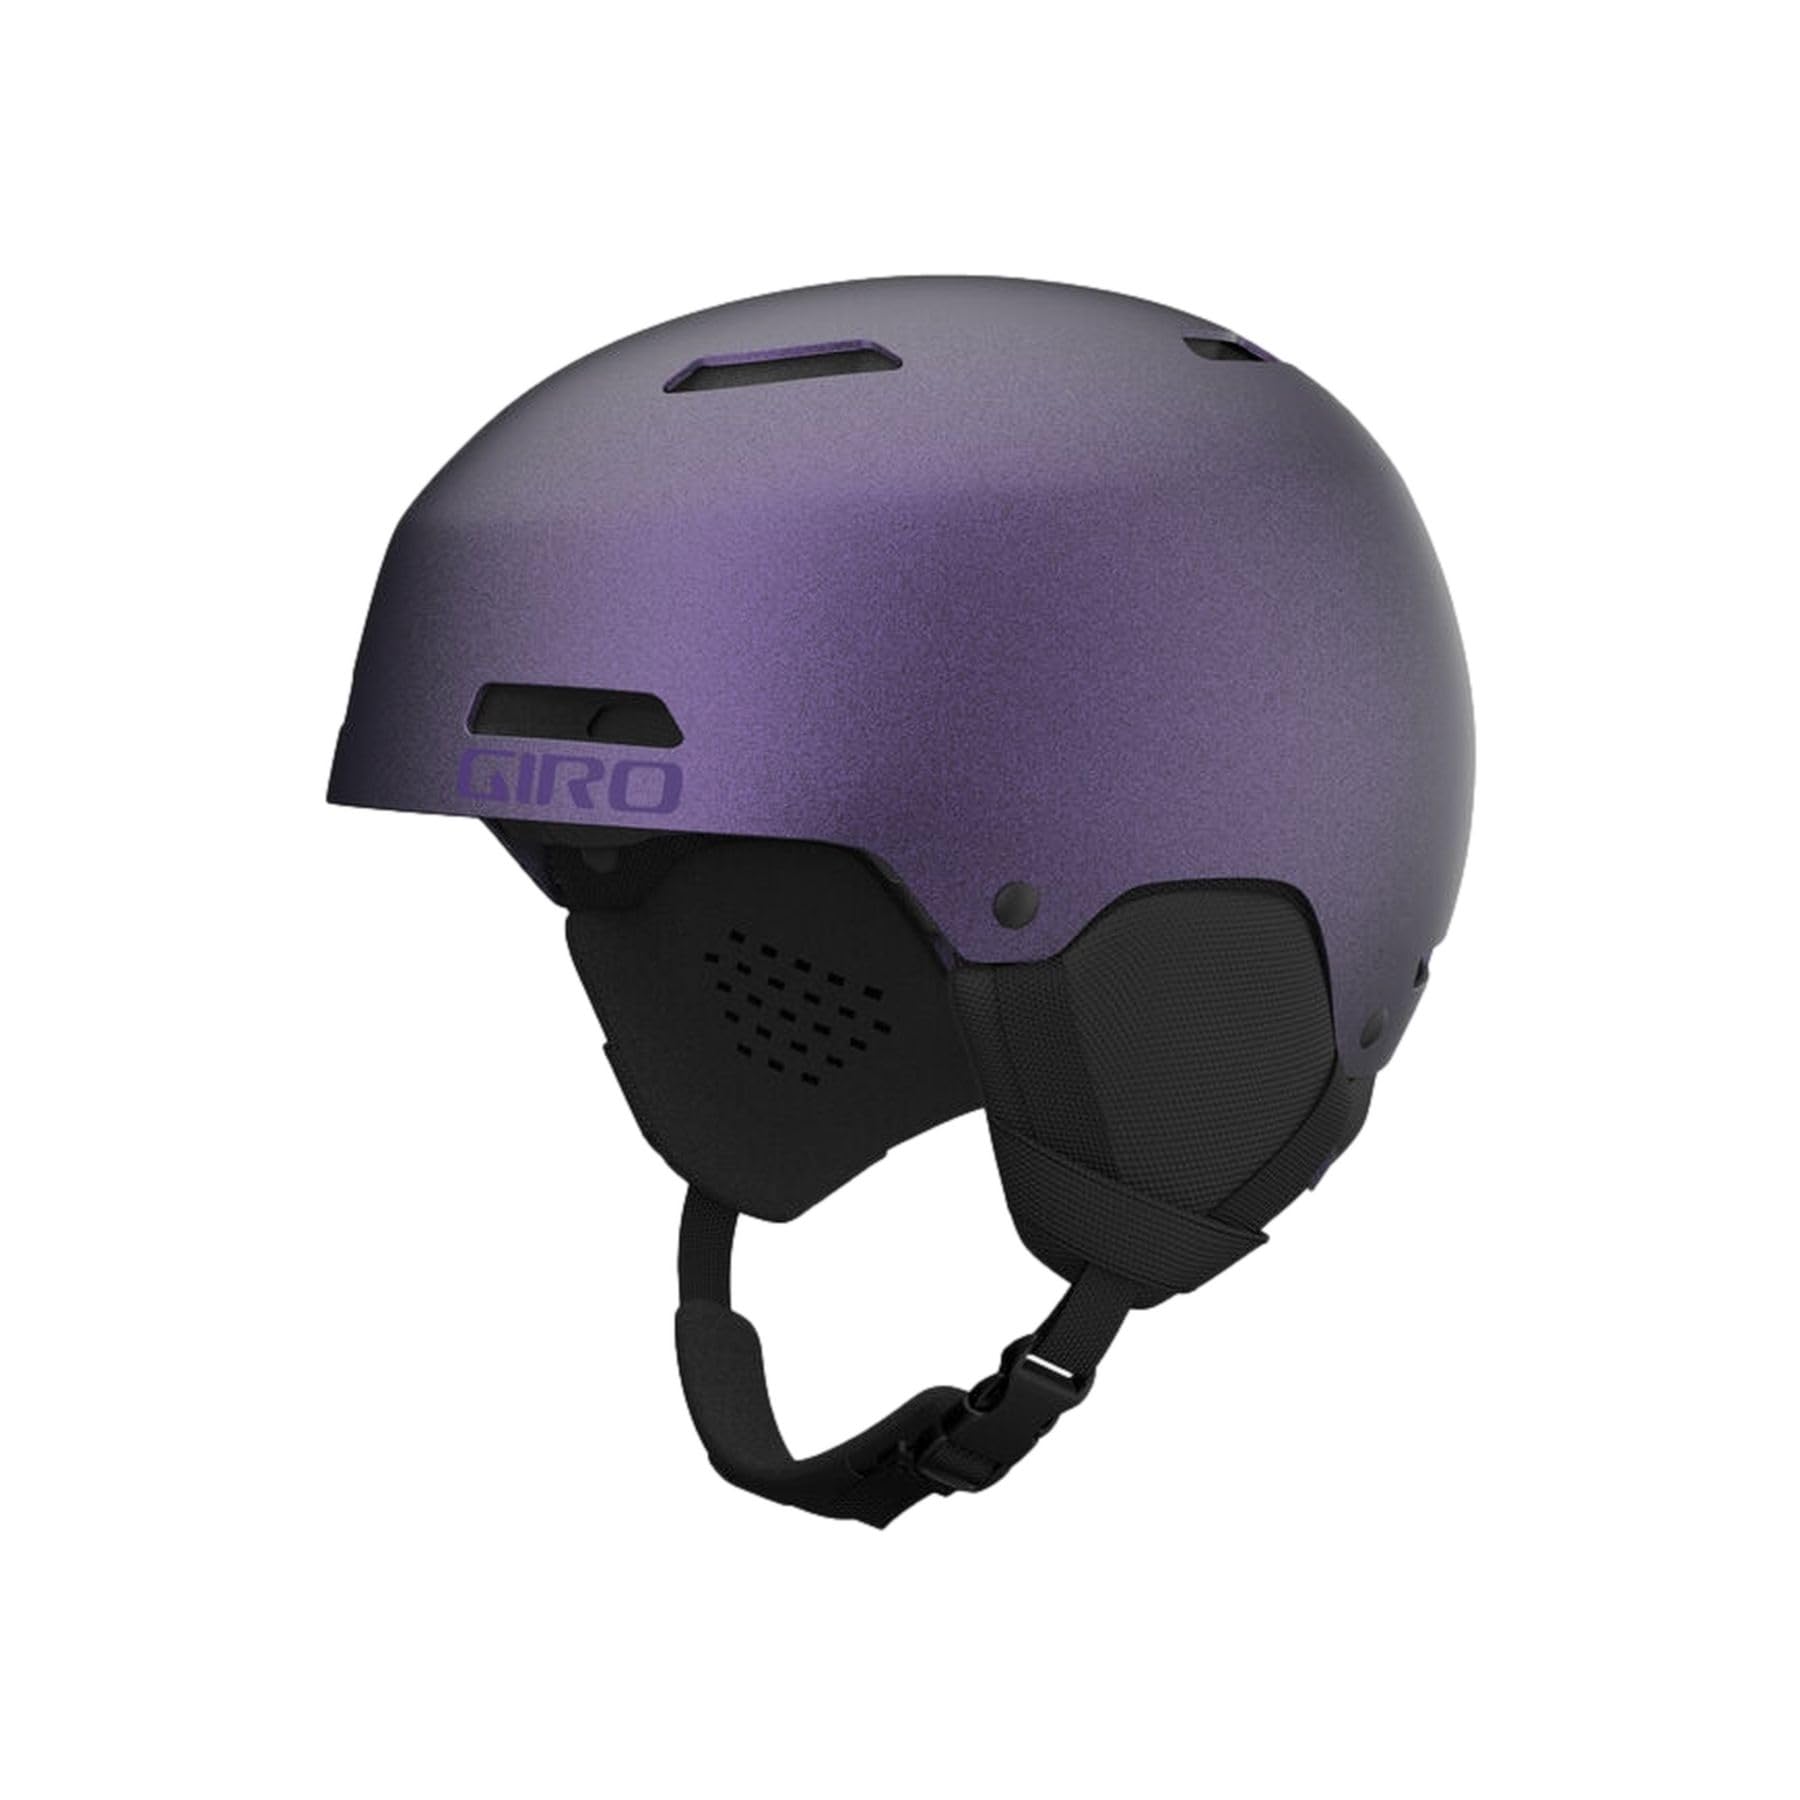 Giro Ledge Ski Helmet - Snowboard Helmet for Men Women Youth - Matte BlackPurple Pearl - S 52-55.5 cm並行輸入品